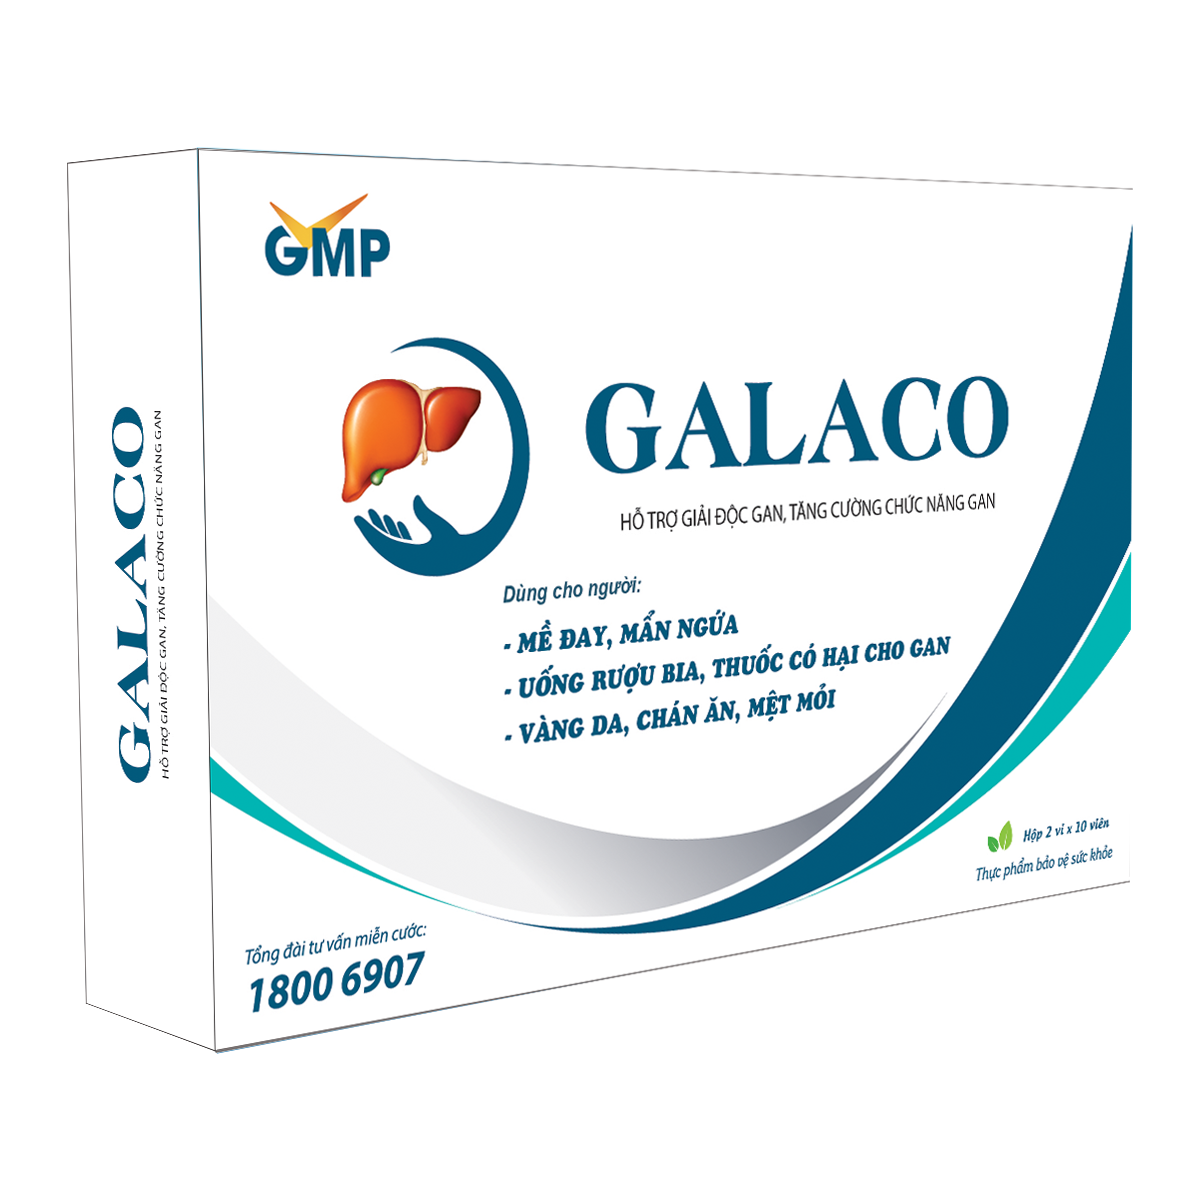 TPBVSK GALACO - Hỗ trợ giải độc gan, tăng cường chức năng gan